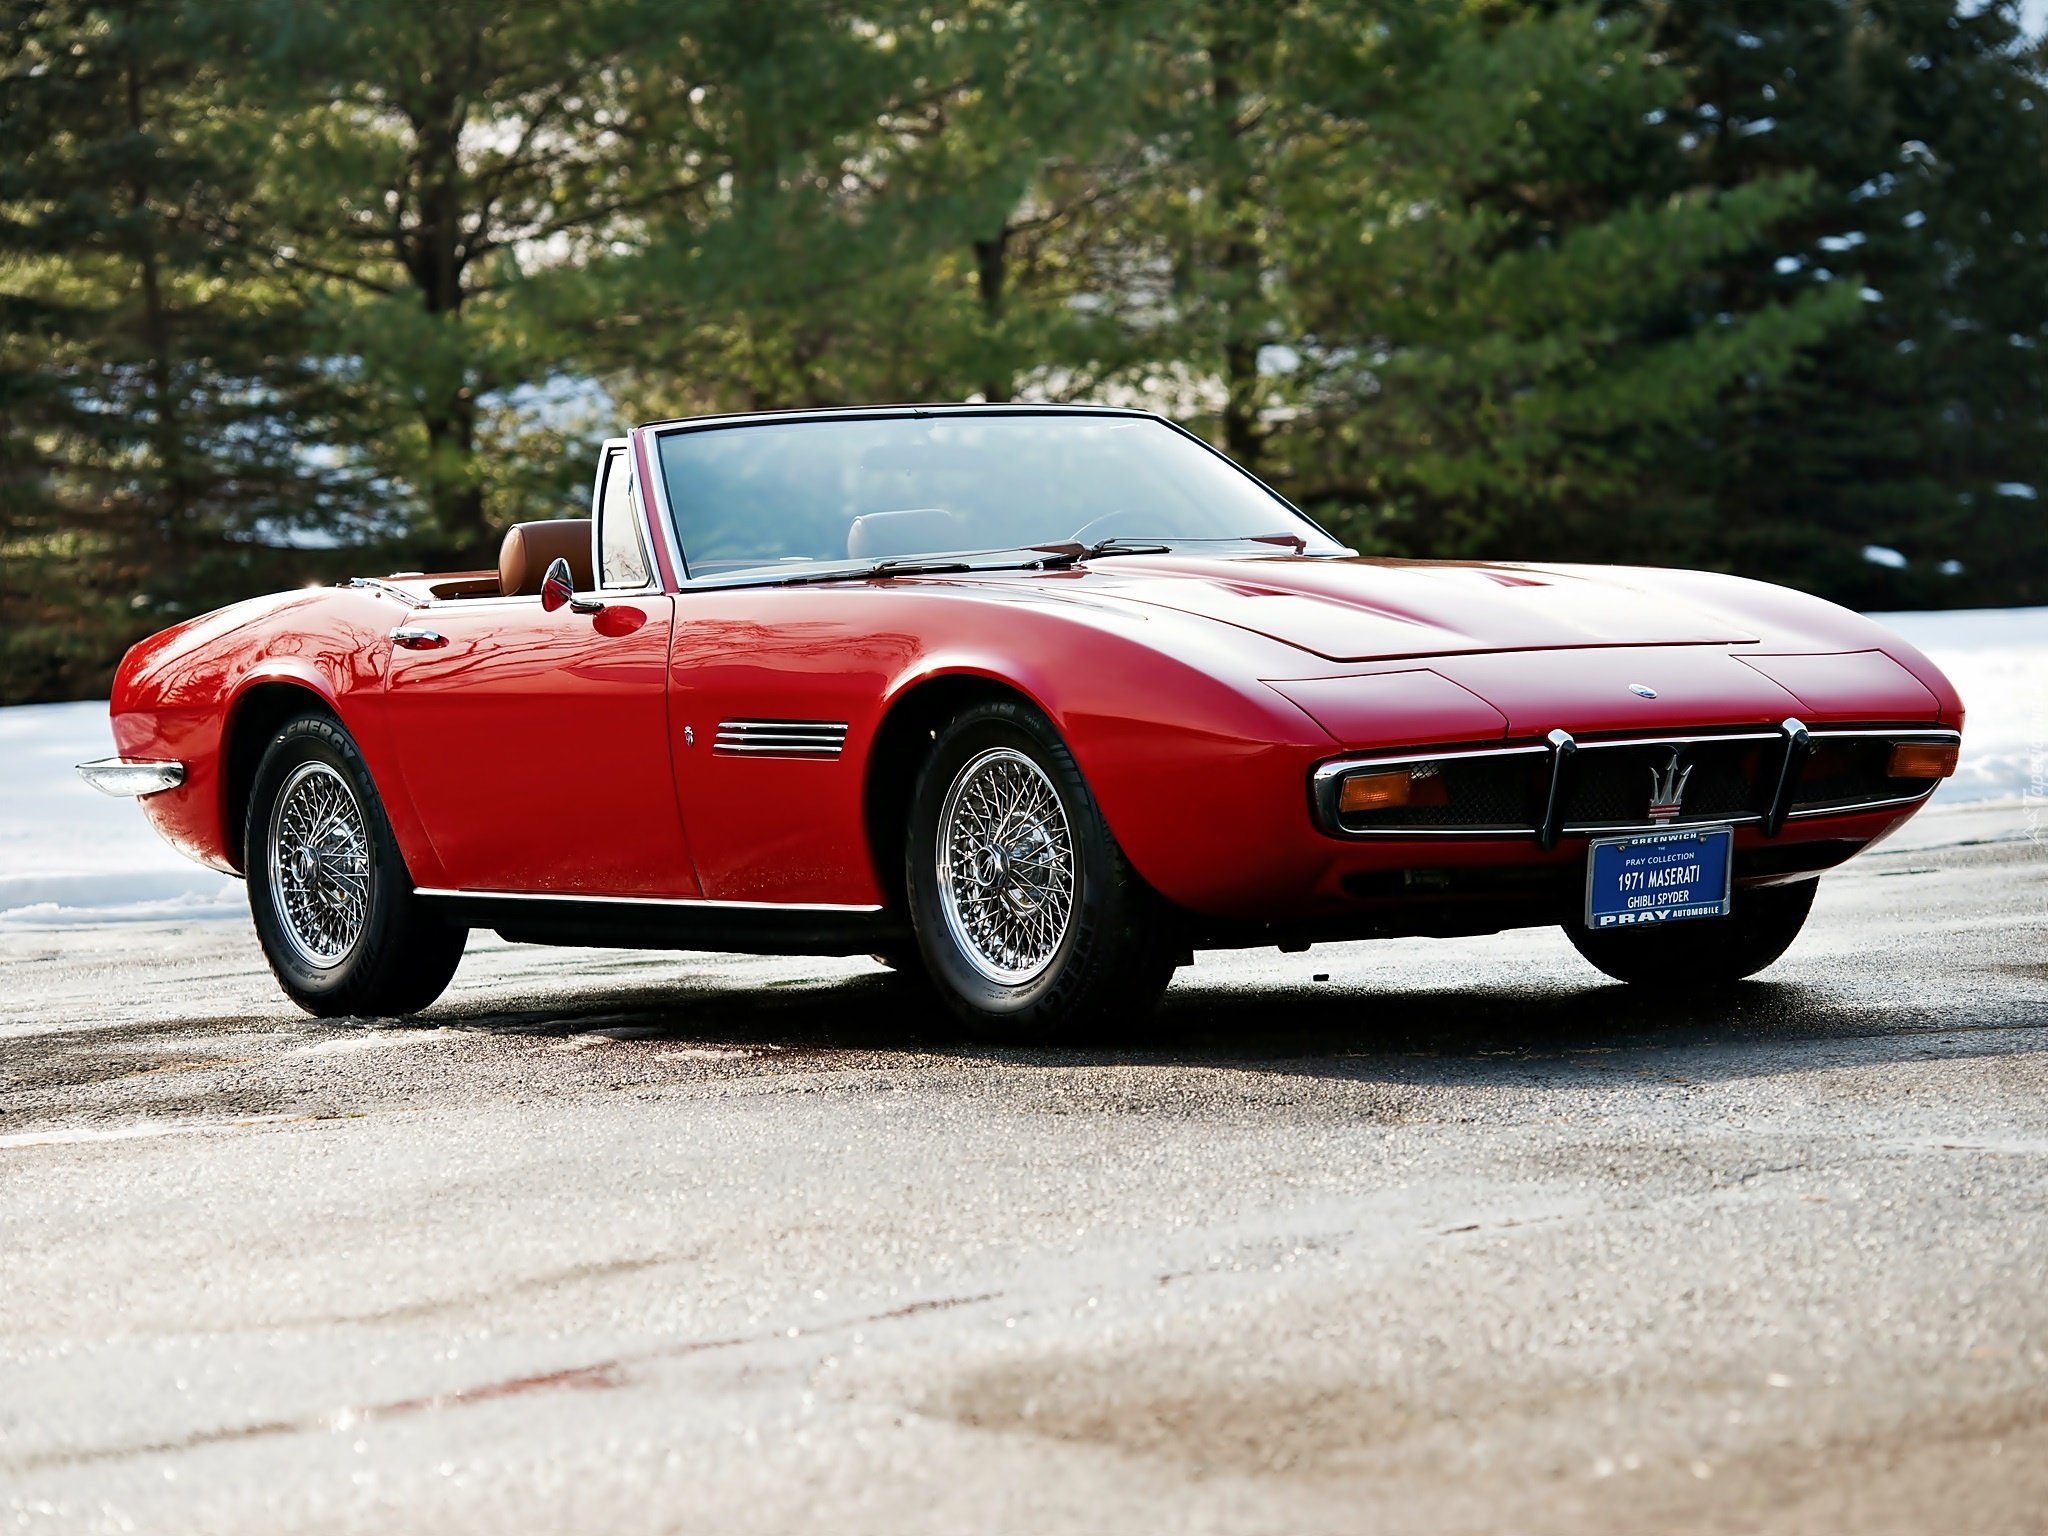 Maserati Ghibli I, 1966 – 1973, Czerwony